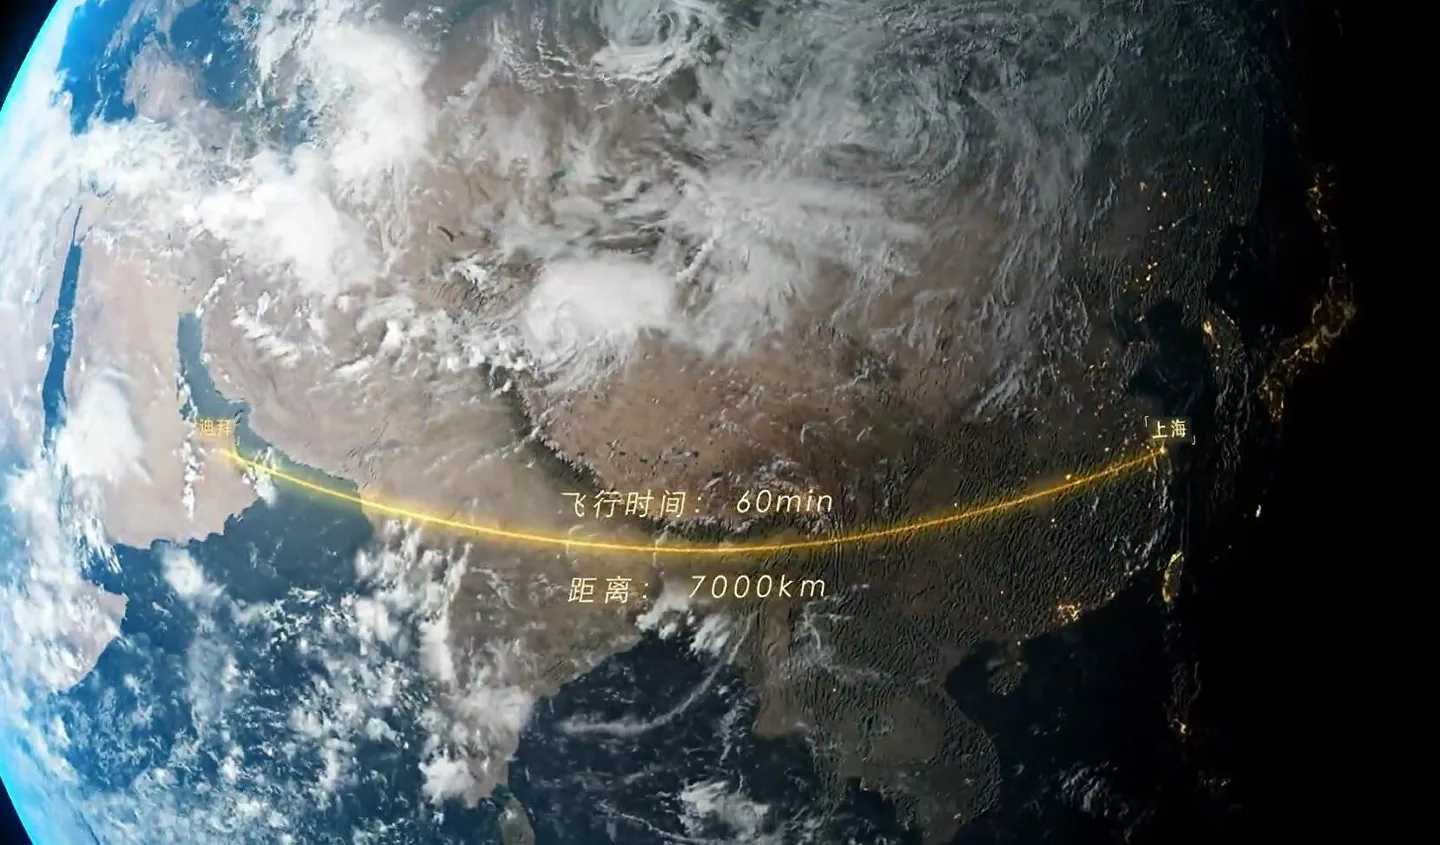 Китайский самолет позволит облететь Землю за несколько часов